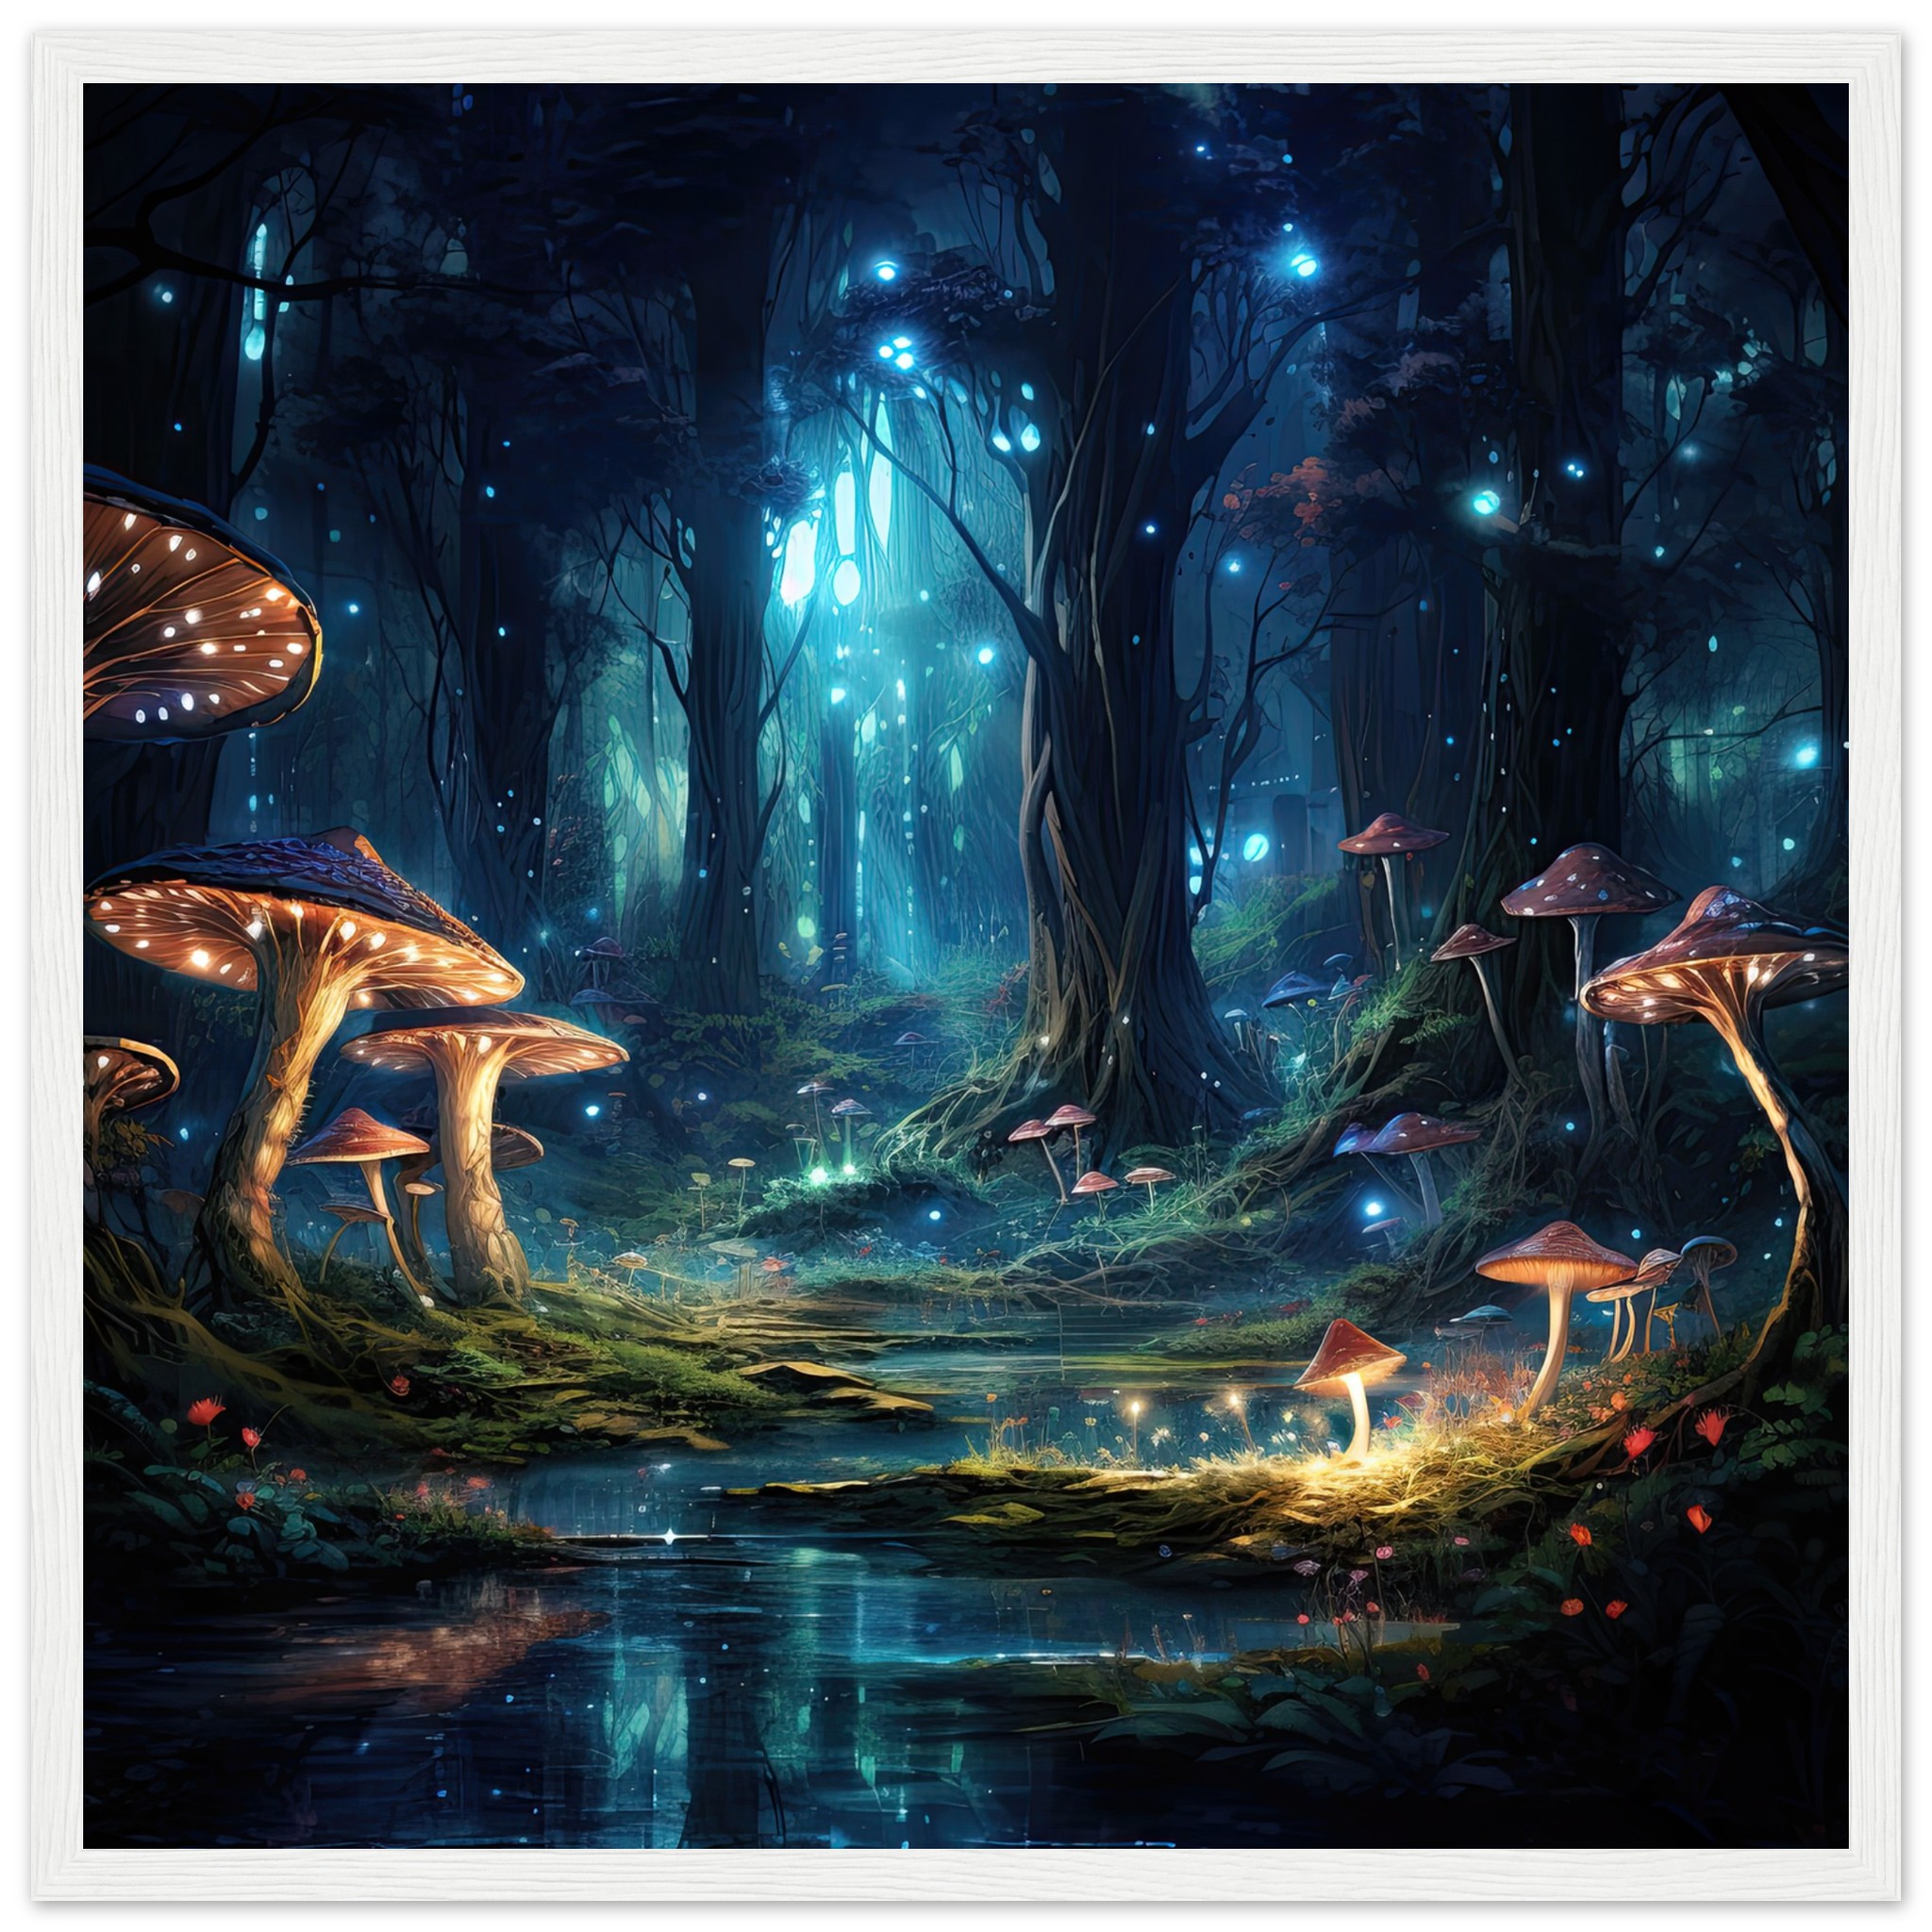 Enchanted Forest of Lights Framed Print